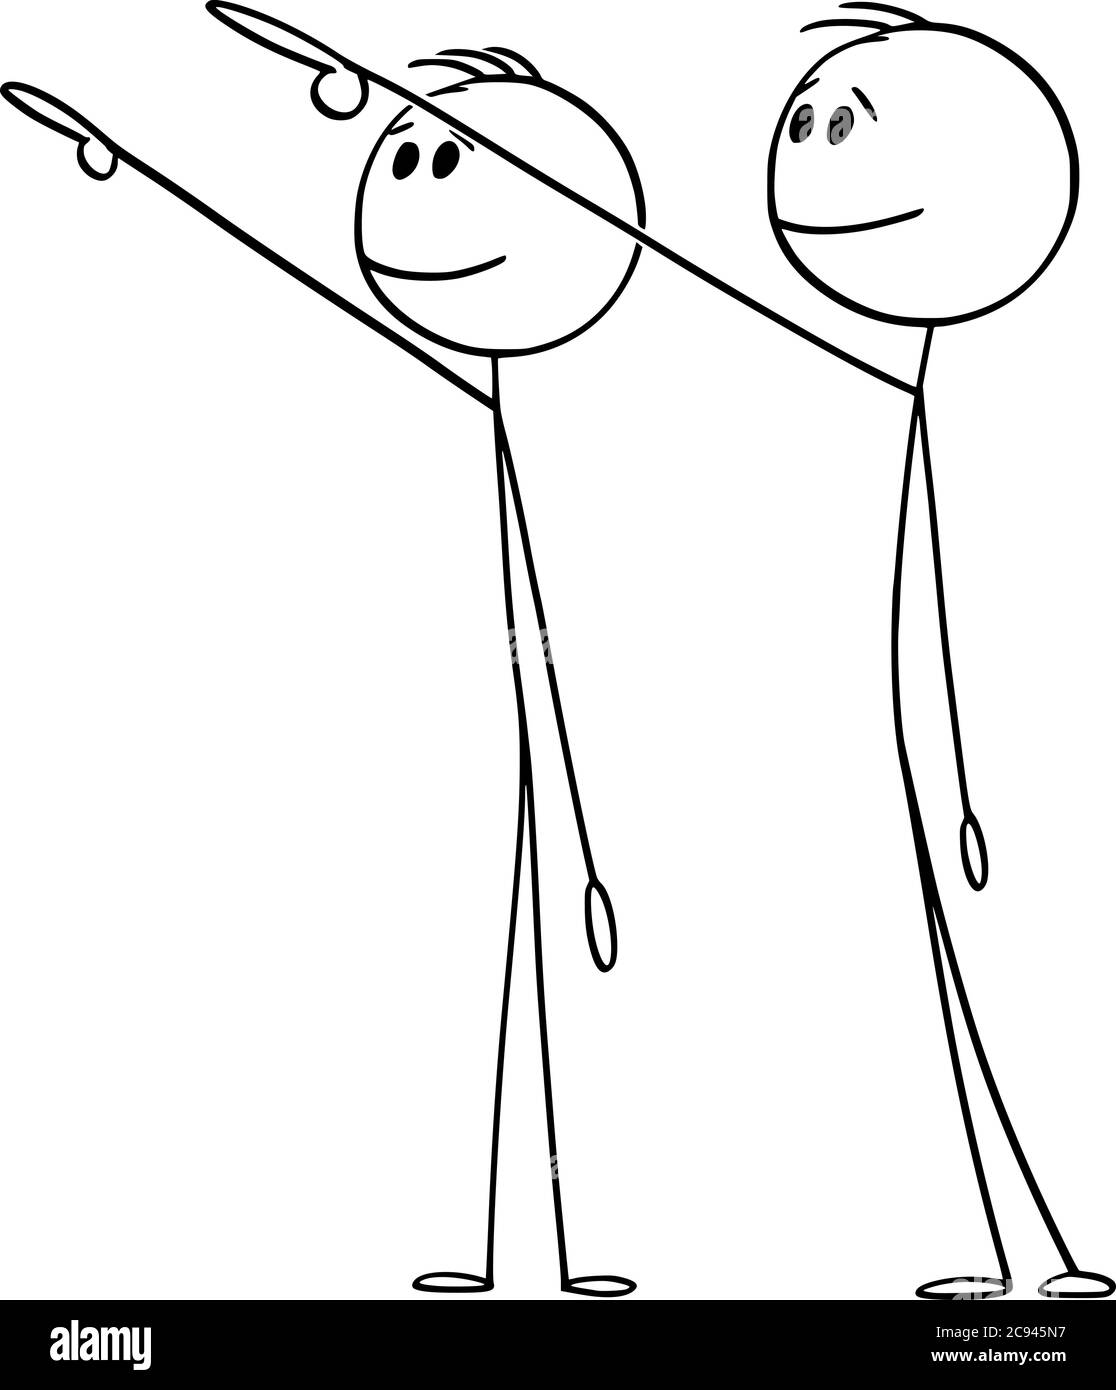 Vektor Cartoon Stick Figur Zeichnung konzeptionelle Illustration von zwei Männern oder Geschäftsleuten zeigen, zeigen oder präsentieren etwas weit, hoch oder hoch über ihnen. Stock Vektor